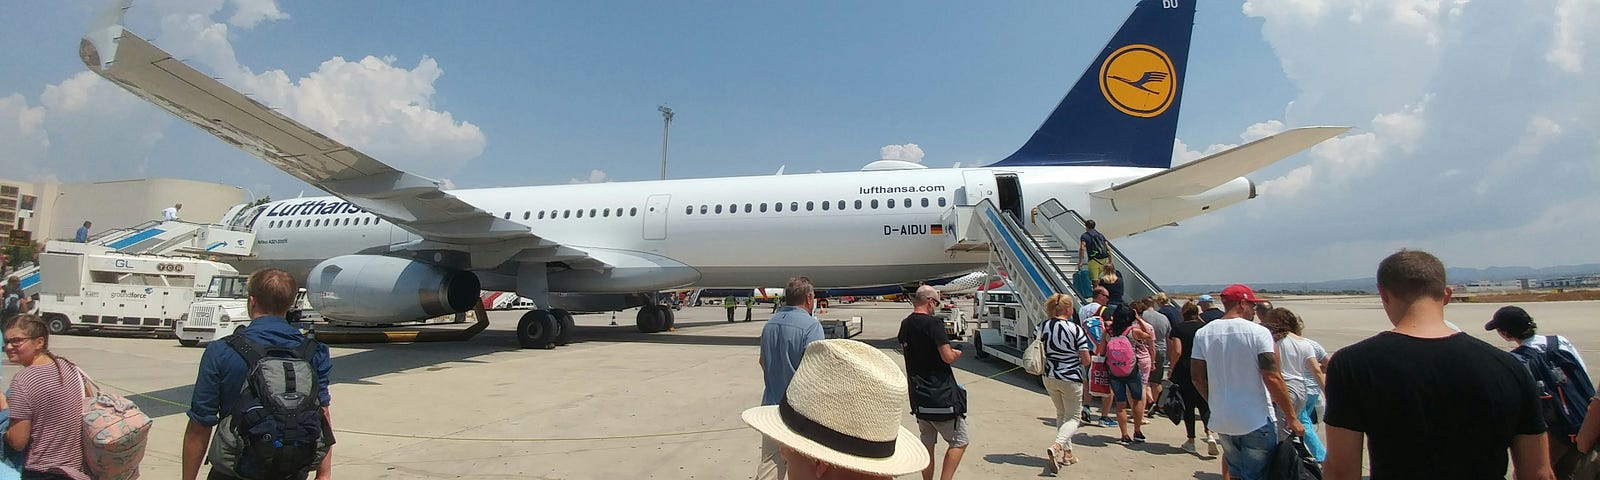 people boarding a plane